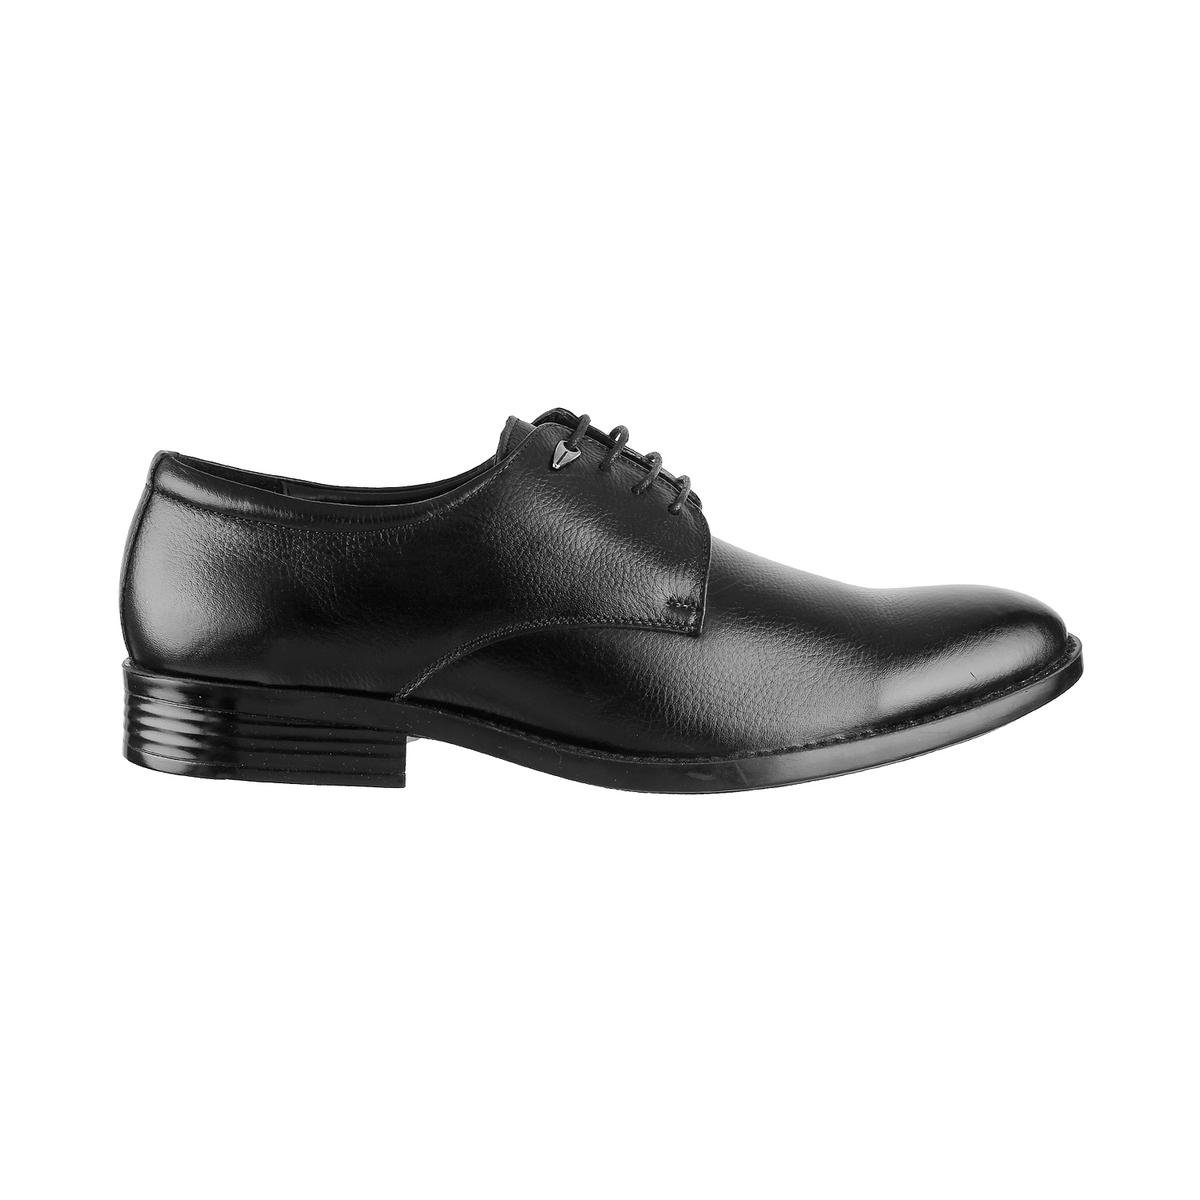 Buy Men Black Formal Lace Up Online | SKU: 19-5537-11-40-Metro Shoes